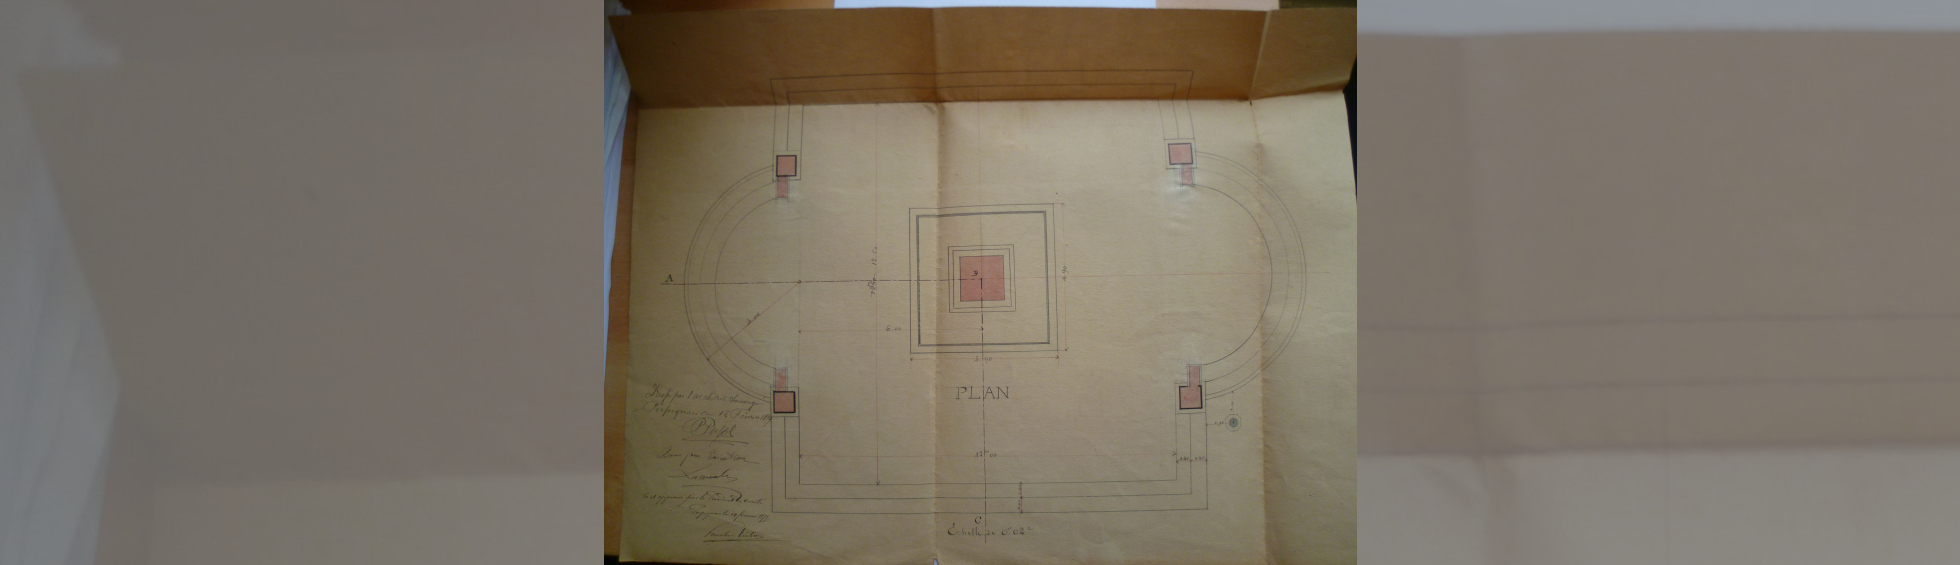 Plan de la plateforme dressé par l'architecte P Pujol et signé par l'entreprise Lacombe (cliché archives VdP)